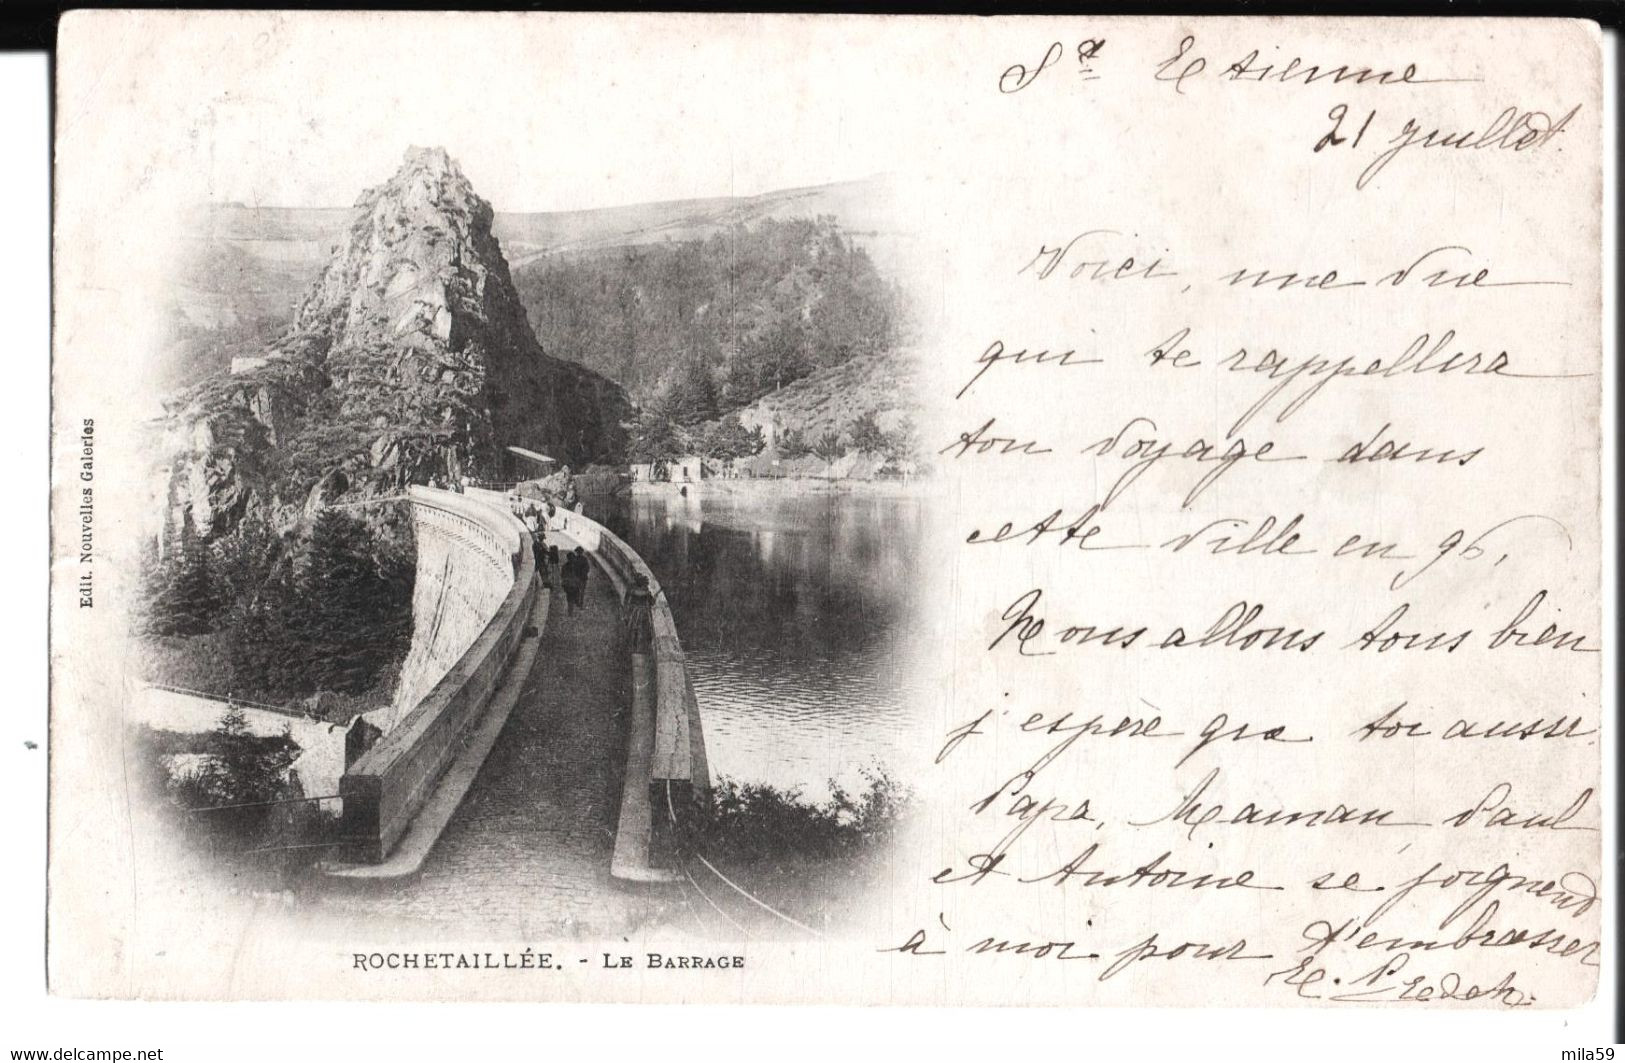 Rochetaillée. Le Barrage. De E. P. Edet à Melle M. Arbelat à Moulins. 1900. - Rochetaillee